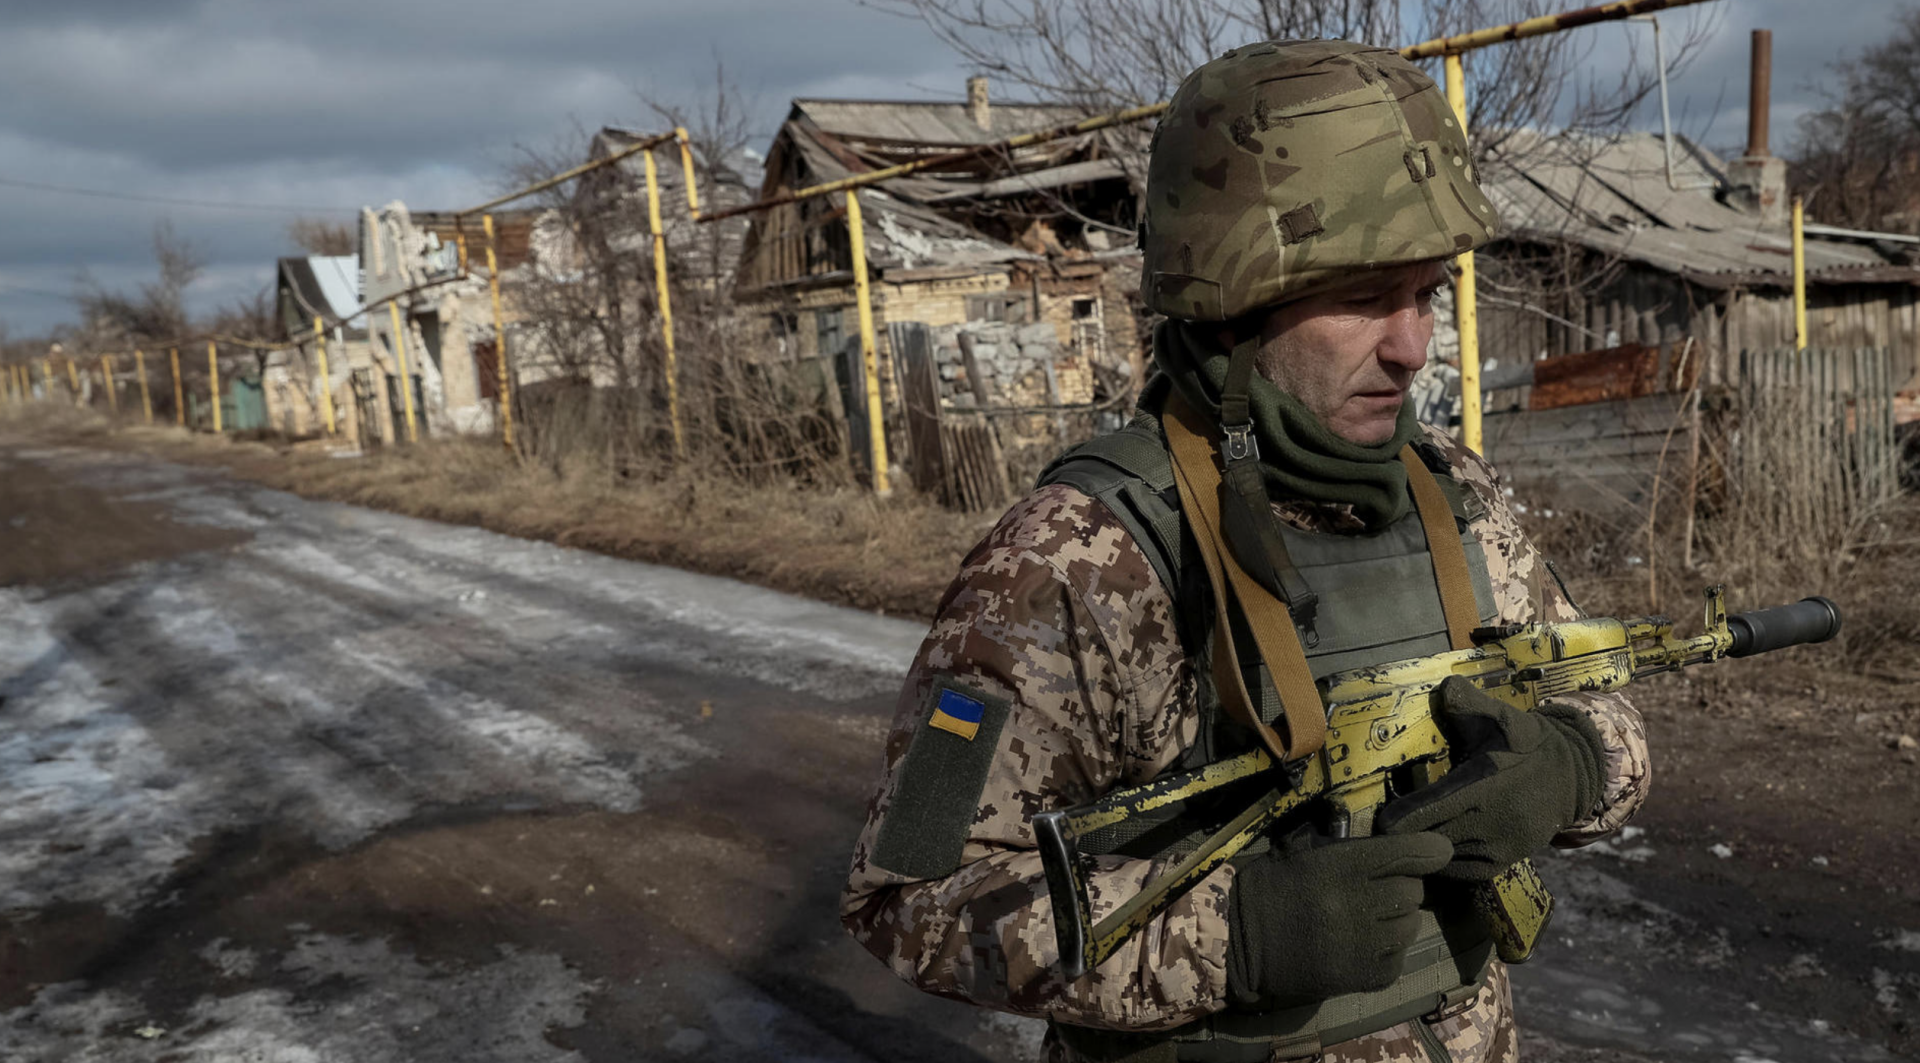 Сайт военные украине сегодня. ВСУ Украины нацбаты. Донбасс 2017. Бронежилеты ВСУ 2022.